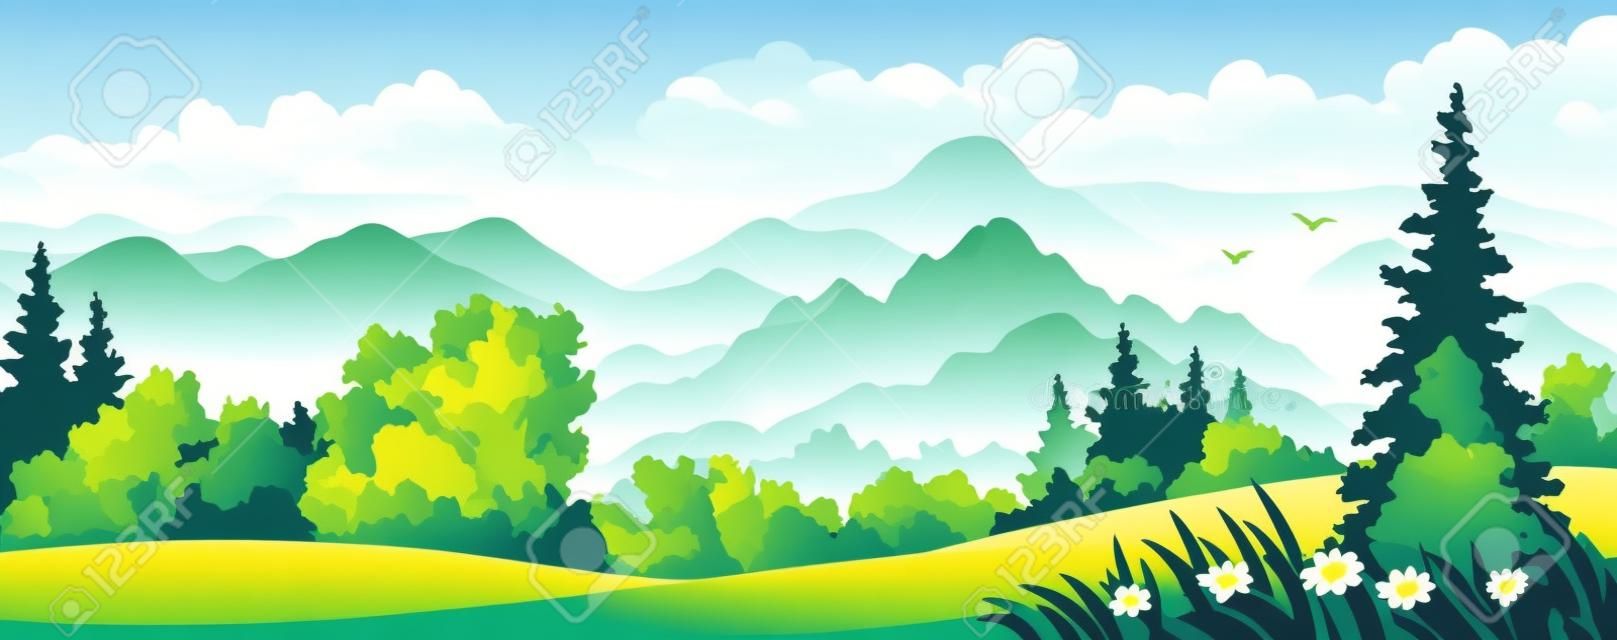 Ilustracja wektorowa z pięknym lesie w górach